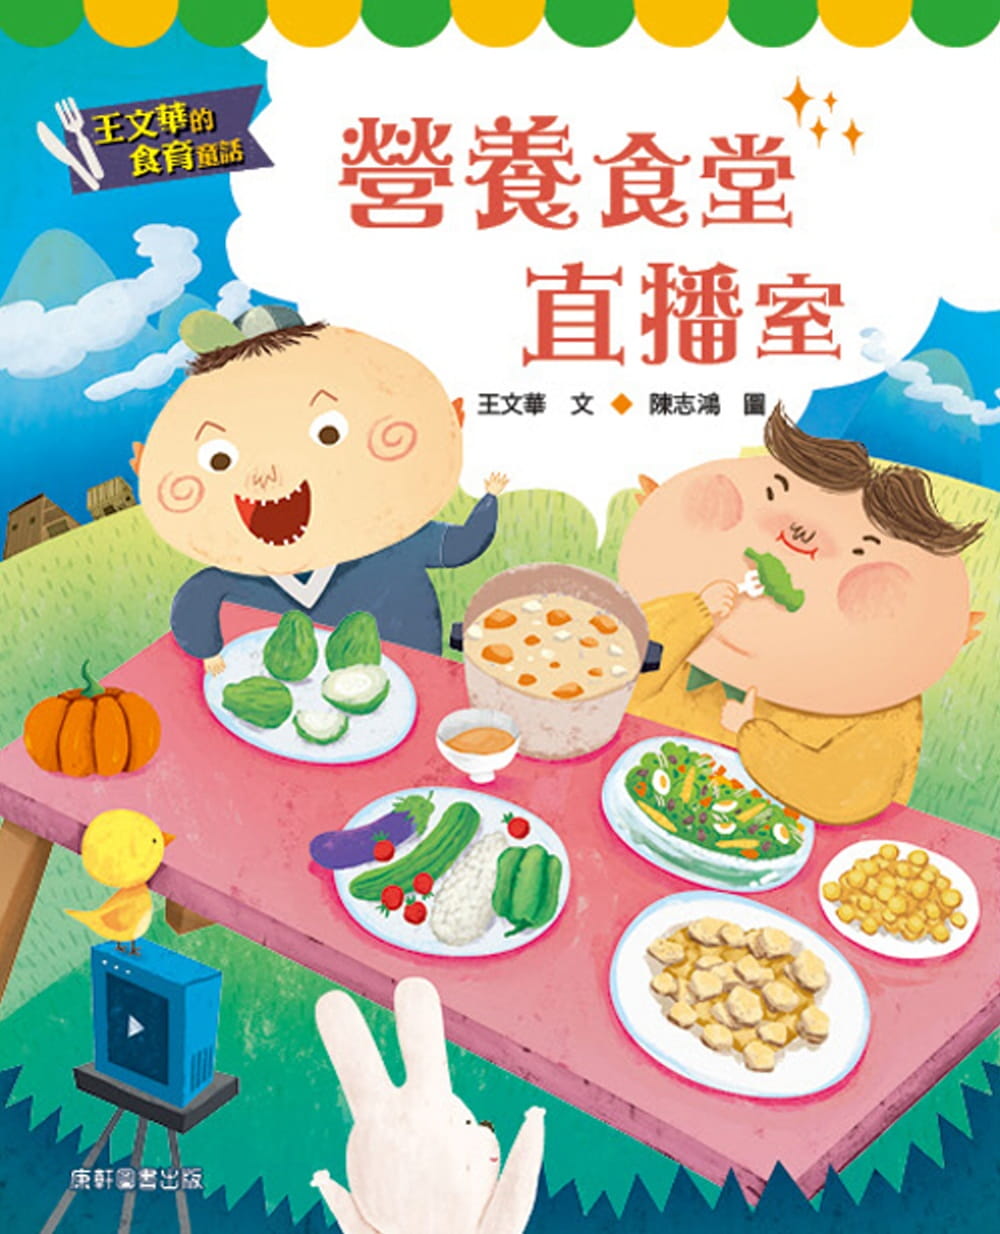 【现货】台版 王文华的食育童话 营养食堂直播室 了解食物从哪来怎么吃如何挑选知识漫画学习趣味插画绘本书籍